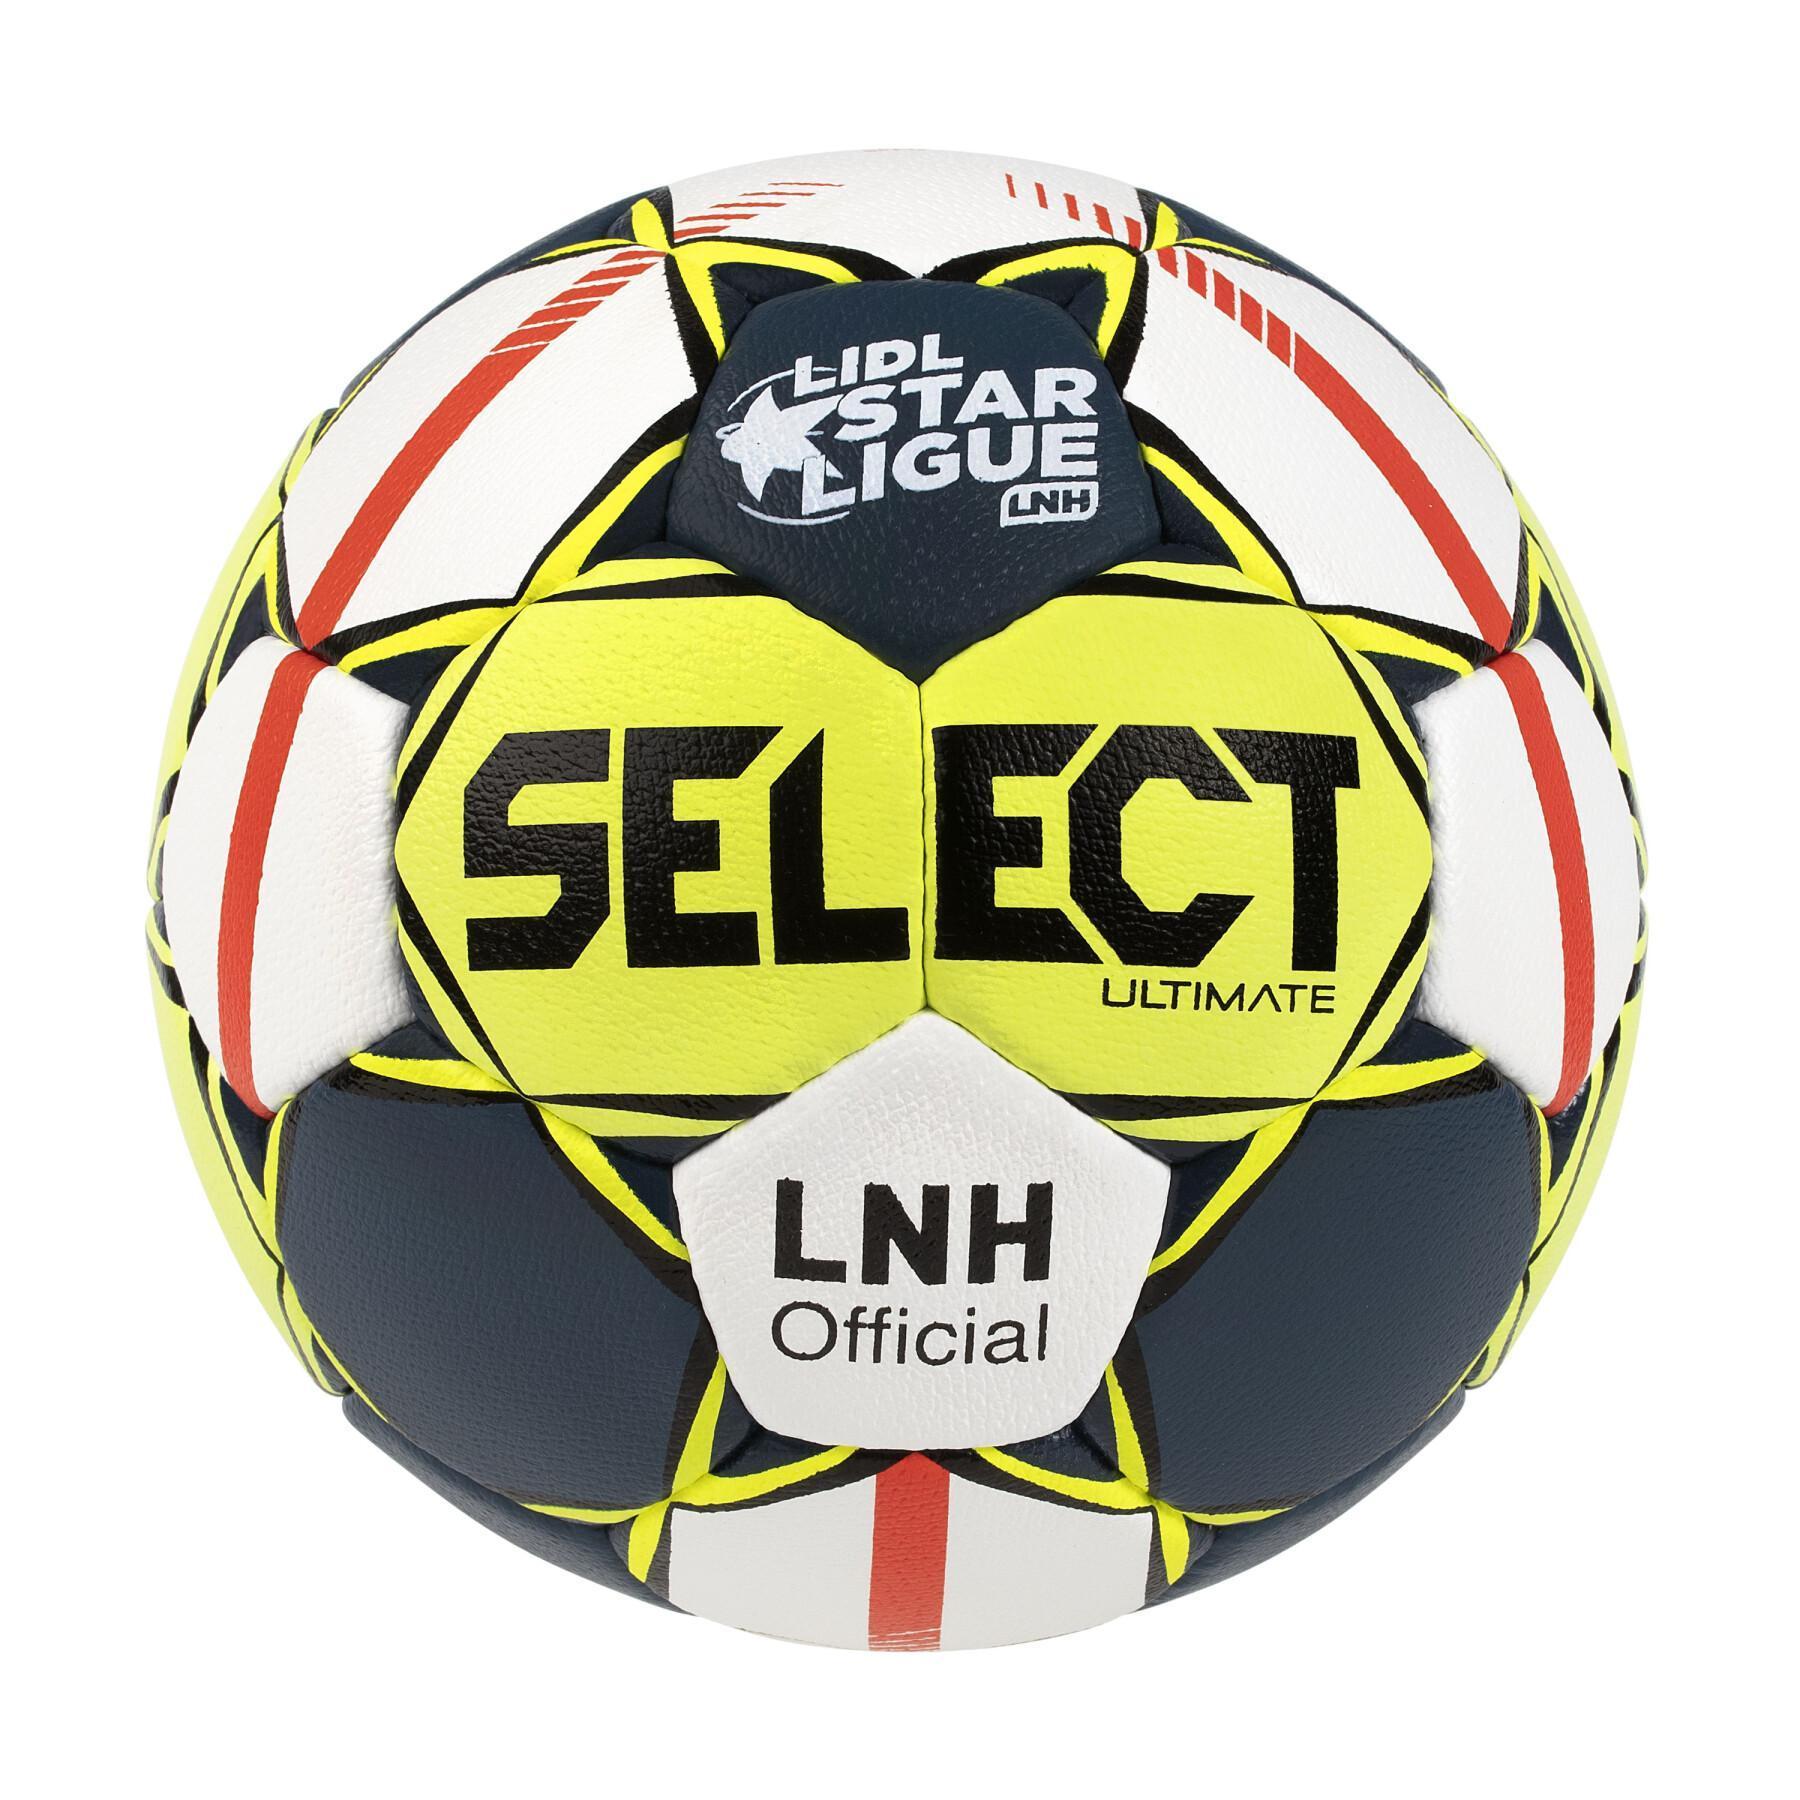 Ballon Officiel LNH 2019/20